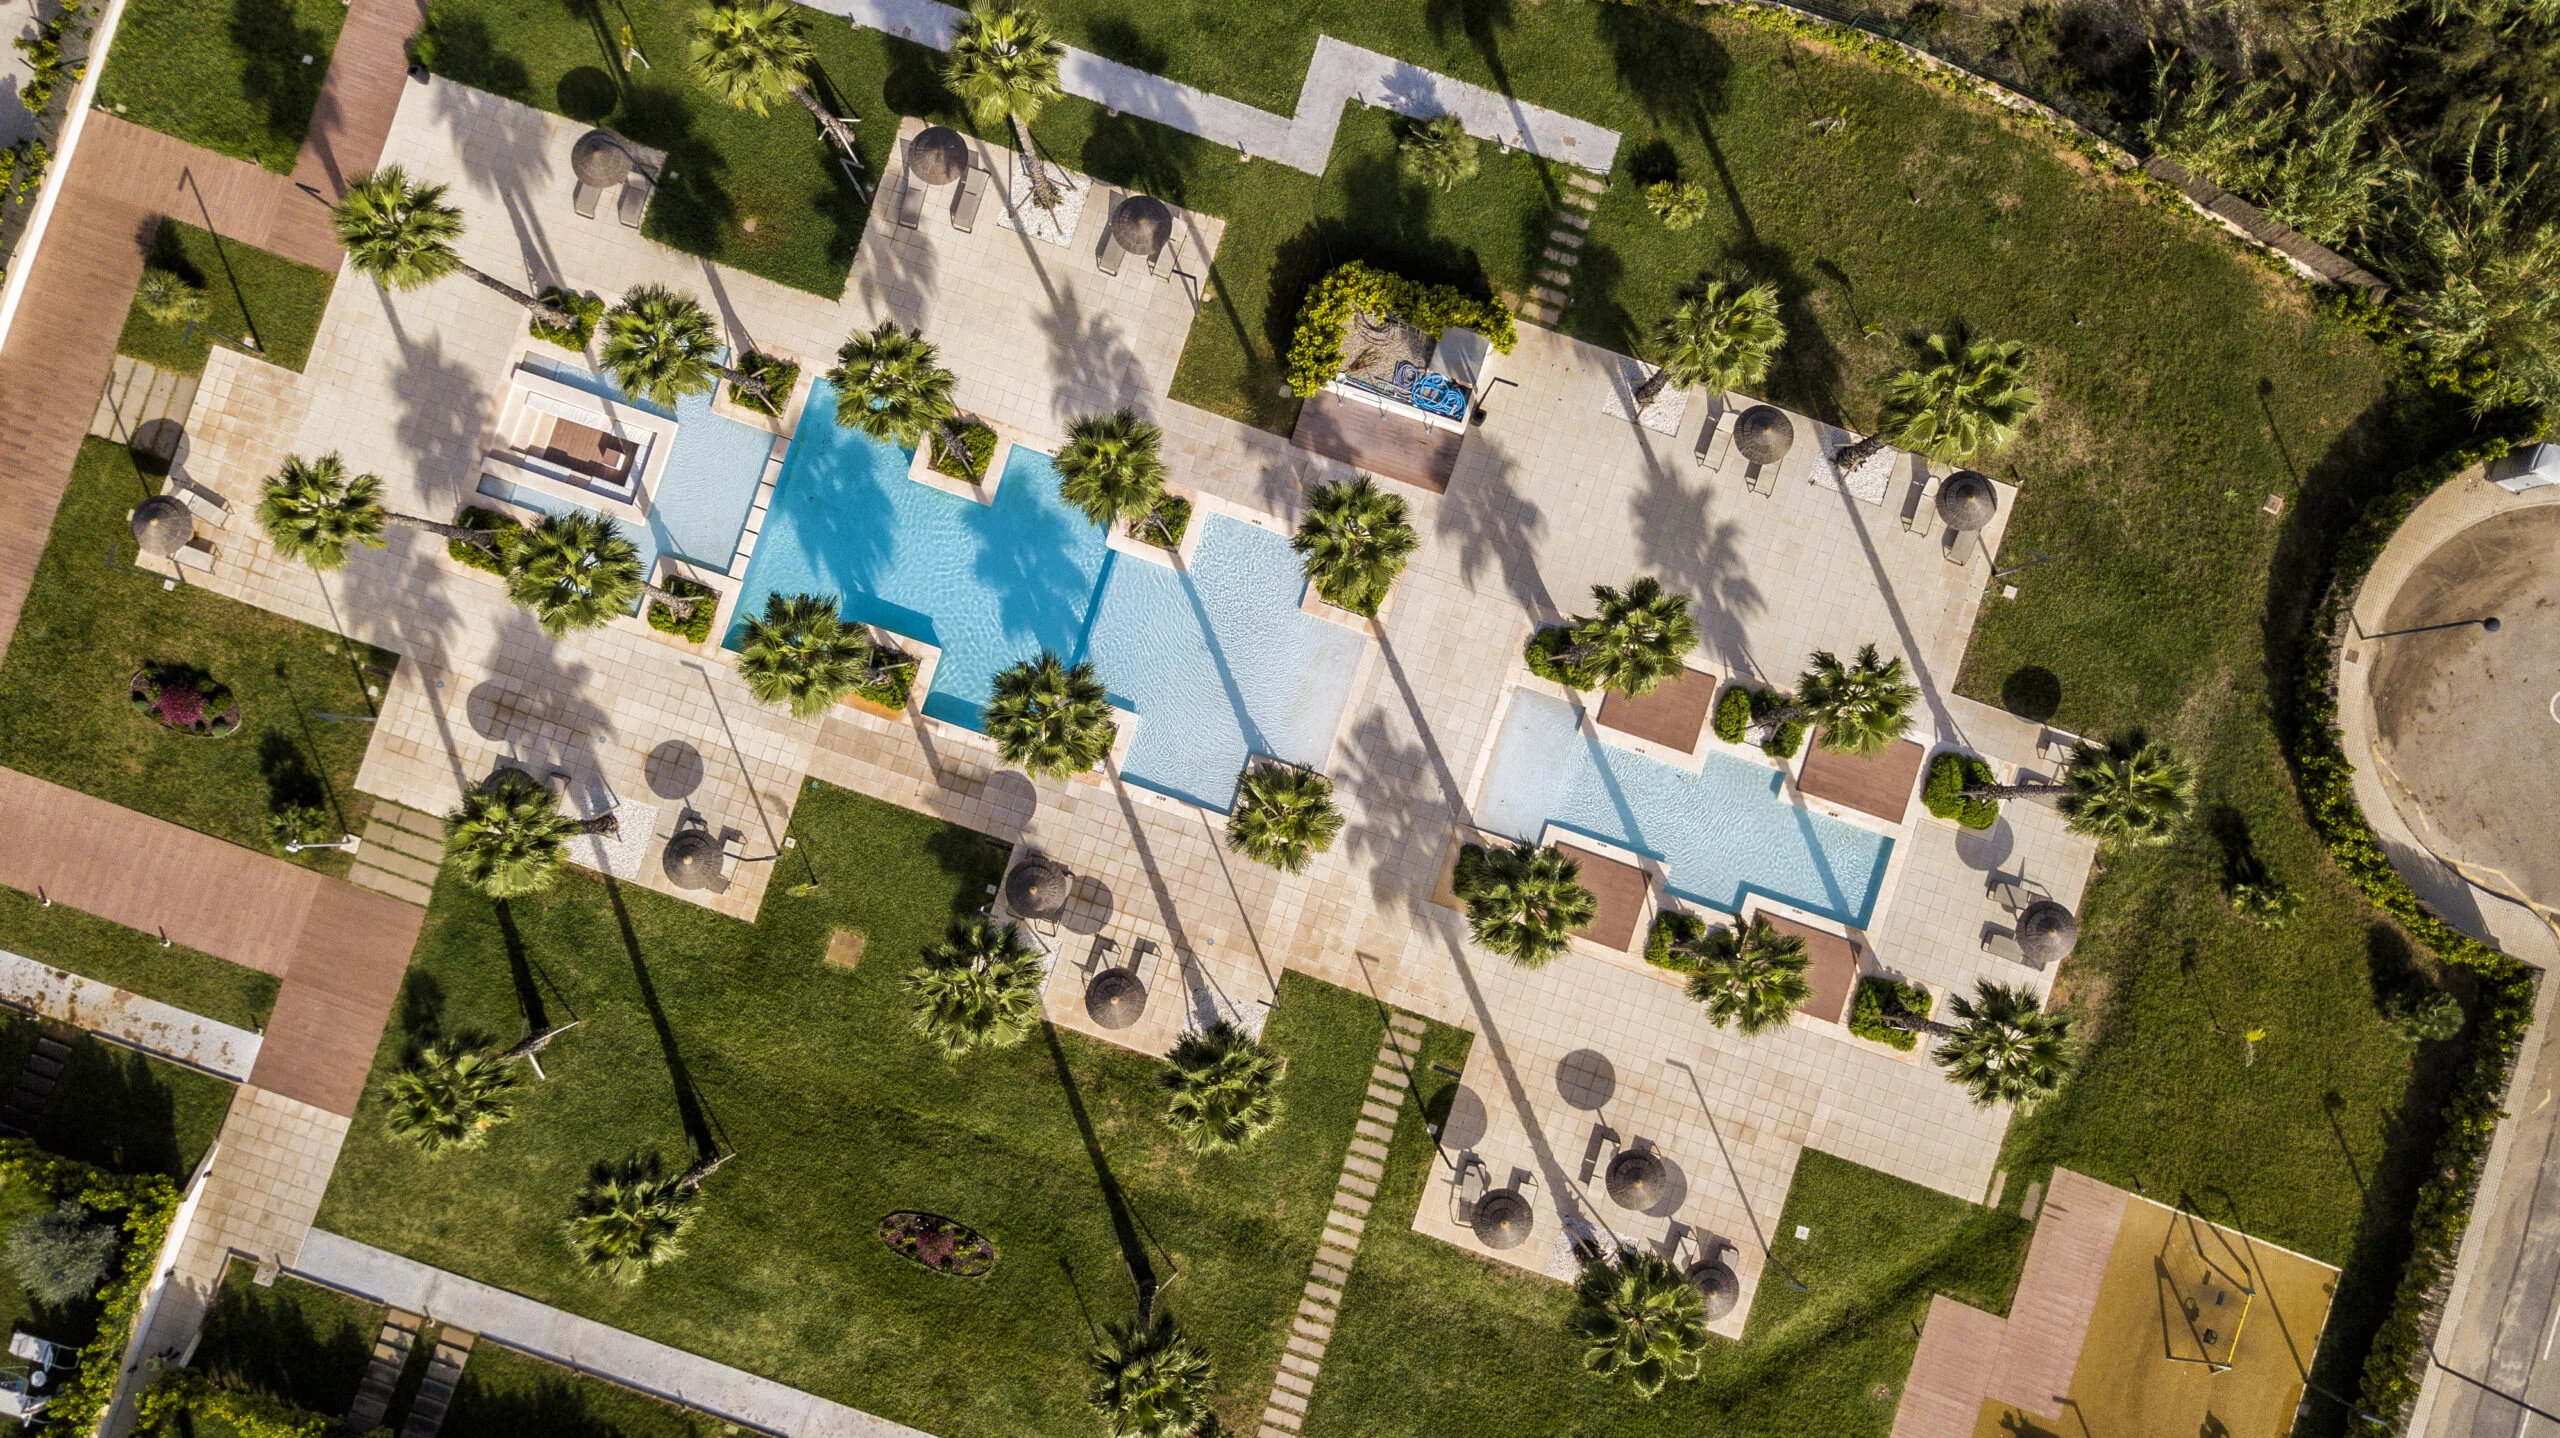 Exclusiva urbanización de lujo con piscina y jardines privados